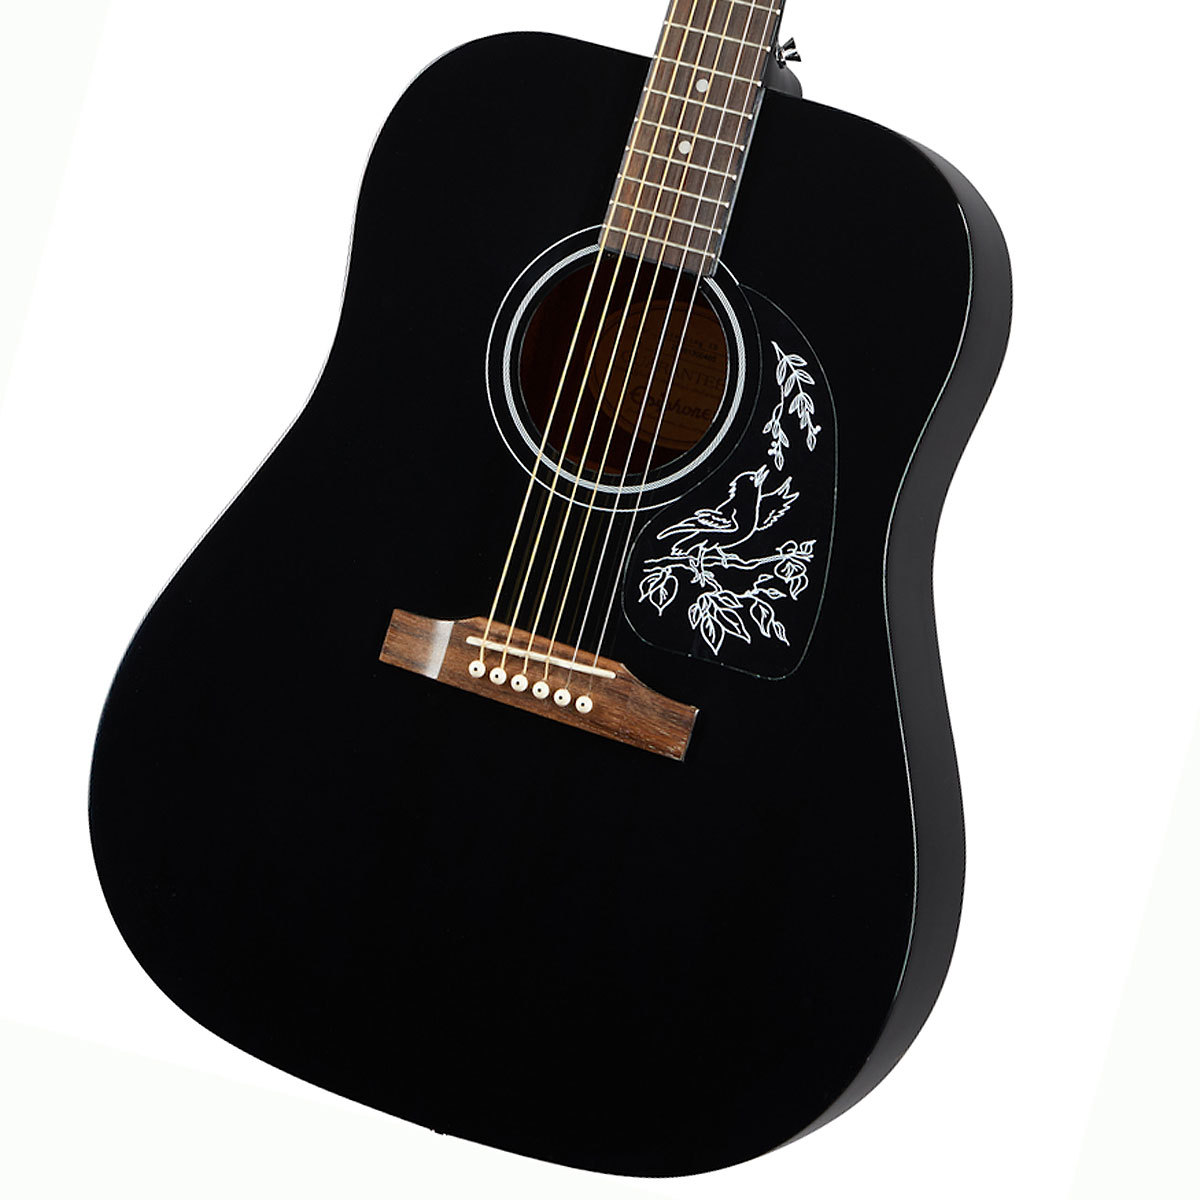 『ほぼ新品』Epiphone アコースティックギターアコースティックギター